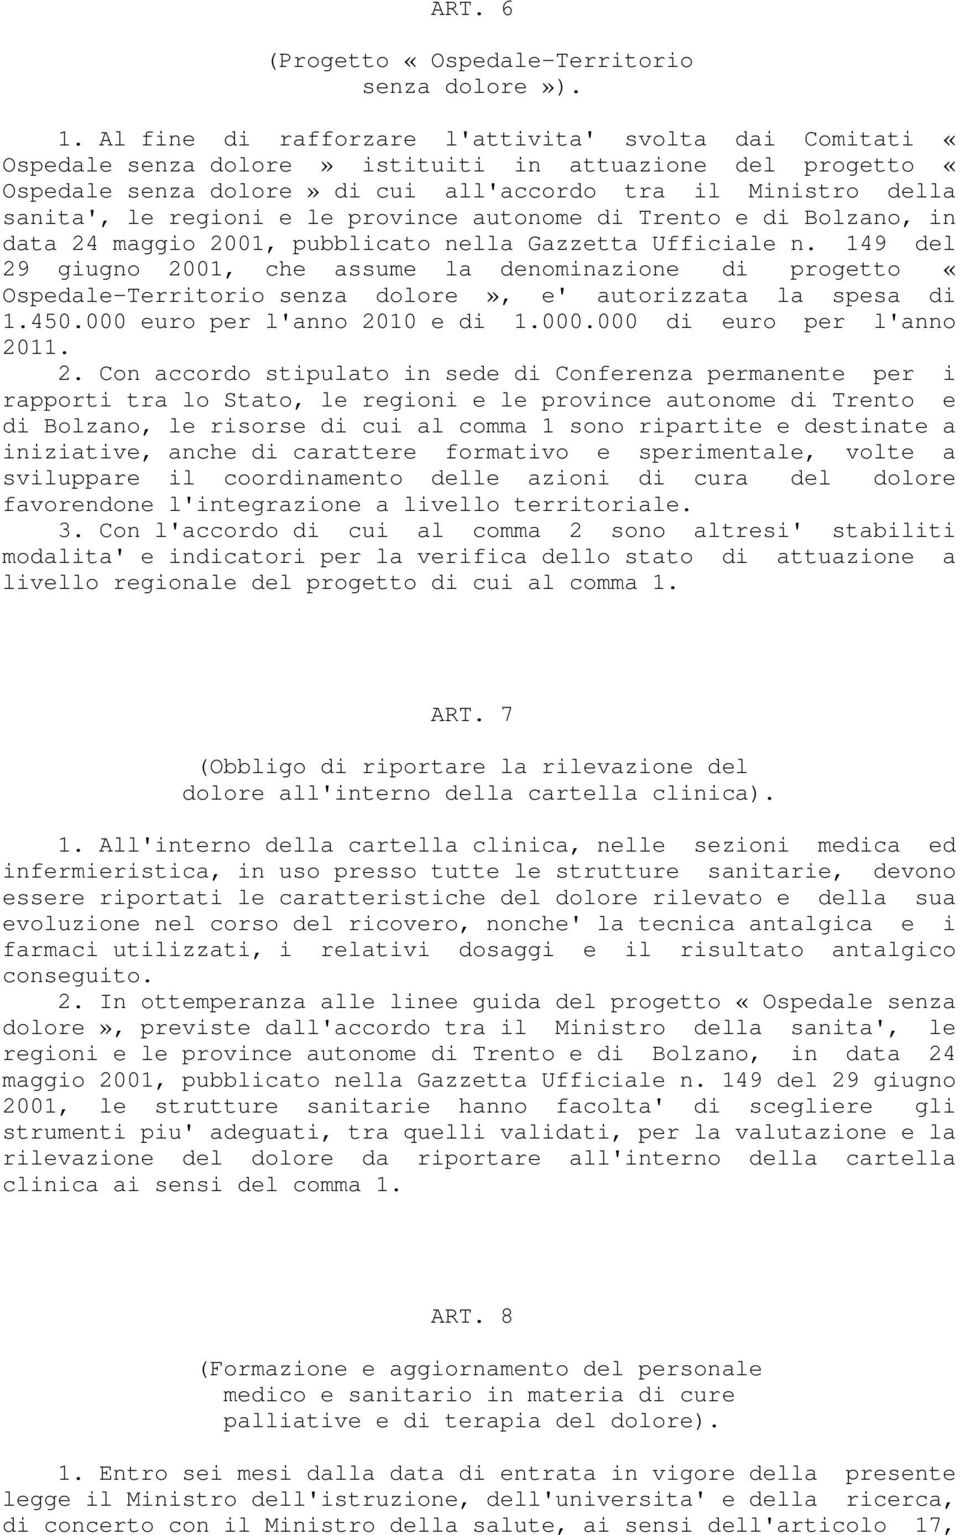 e le province autonome di Trento e di Bolzano, in data 24 maggio 2001, pubblicato nella Gazzetta Ufficiale n.